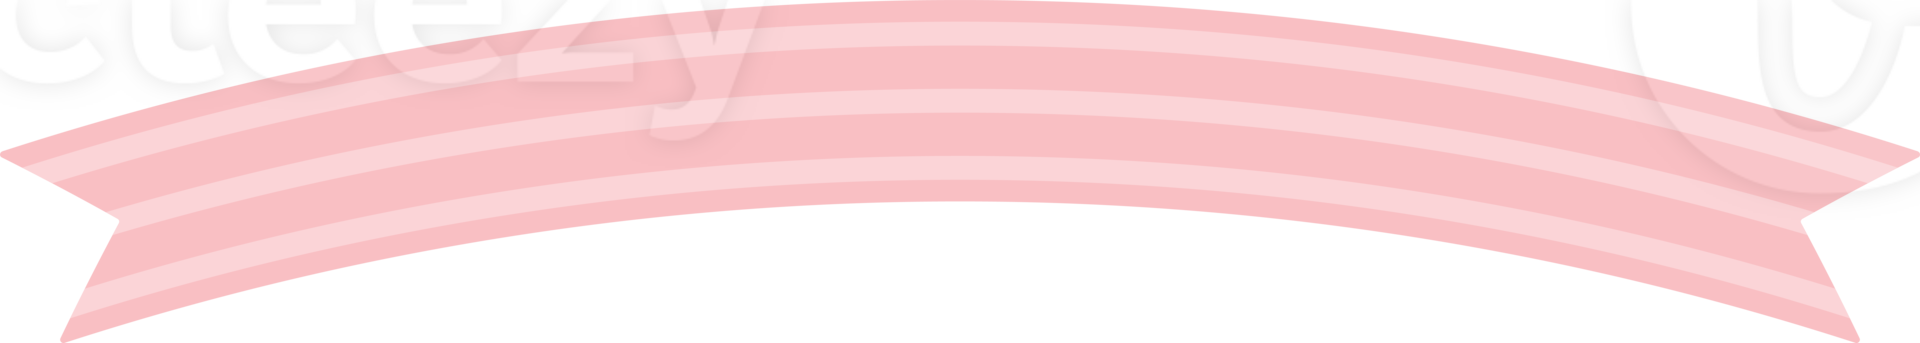 Cute pastel pink patterned ribbon label. Flat design illustration. png